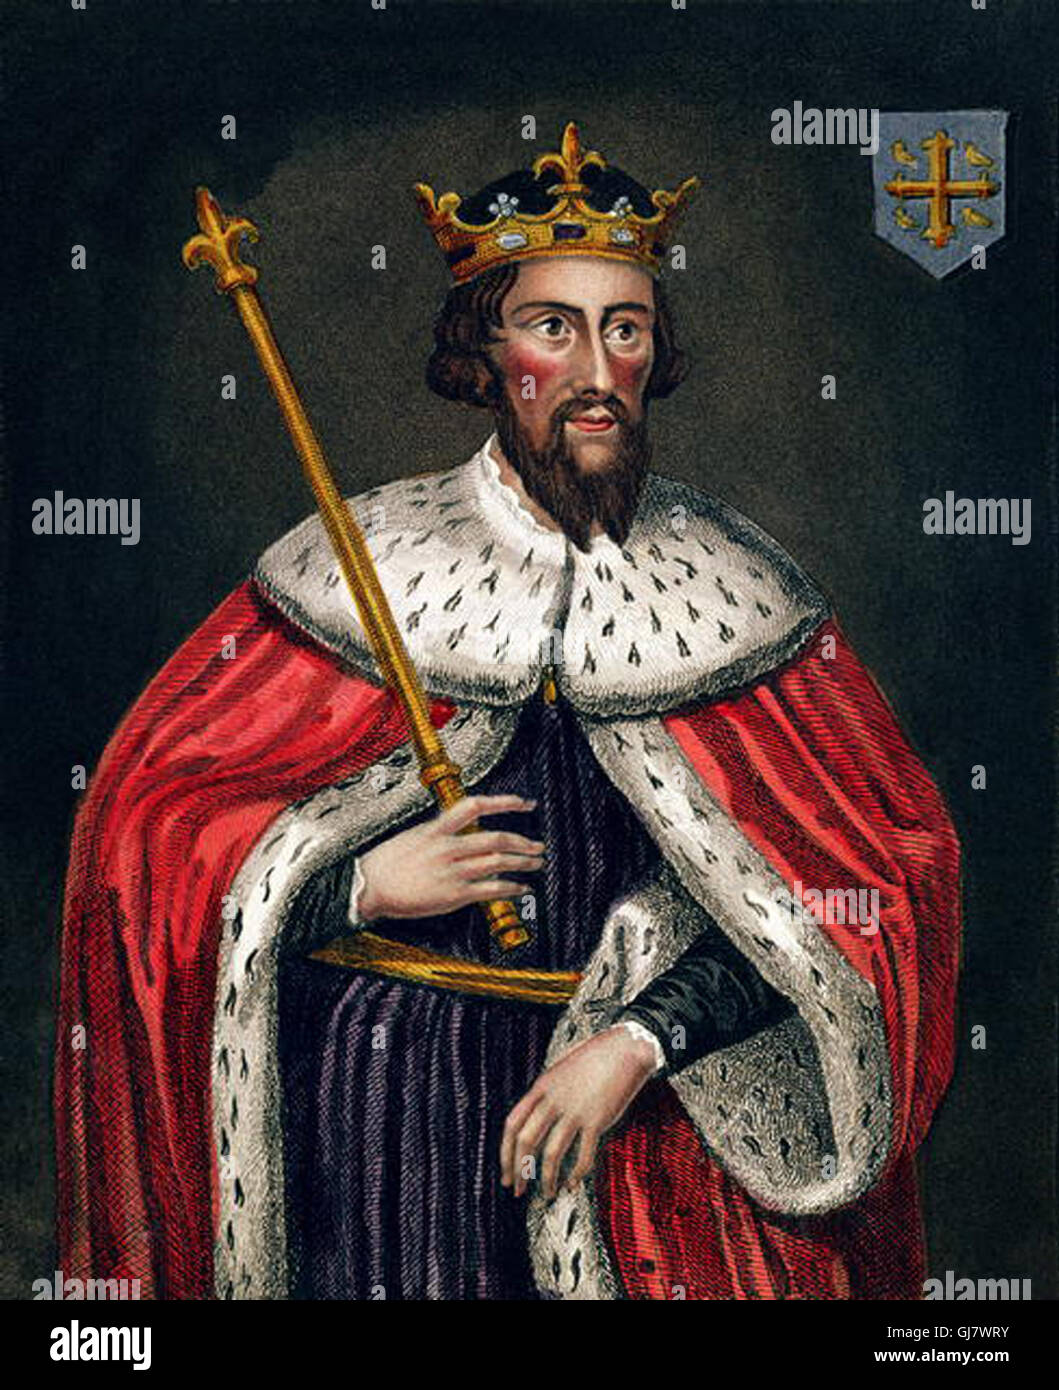 Alfred le Grand (849 - 26 octobre 899) fut roi du Wessex de 871 à 899. On voit ici la peinture à la Bodleian Library (gravure couleur) par l'école anglaise (19e siècle), domaine public image. Banque D'Images